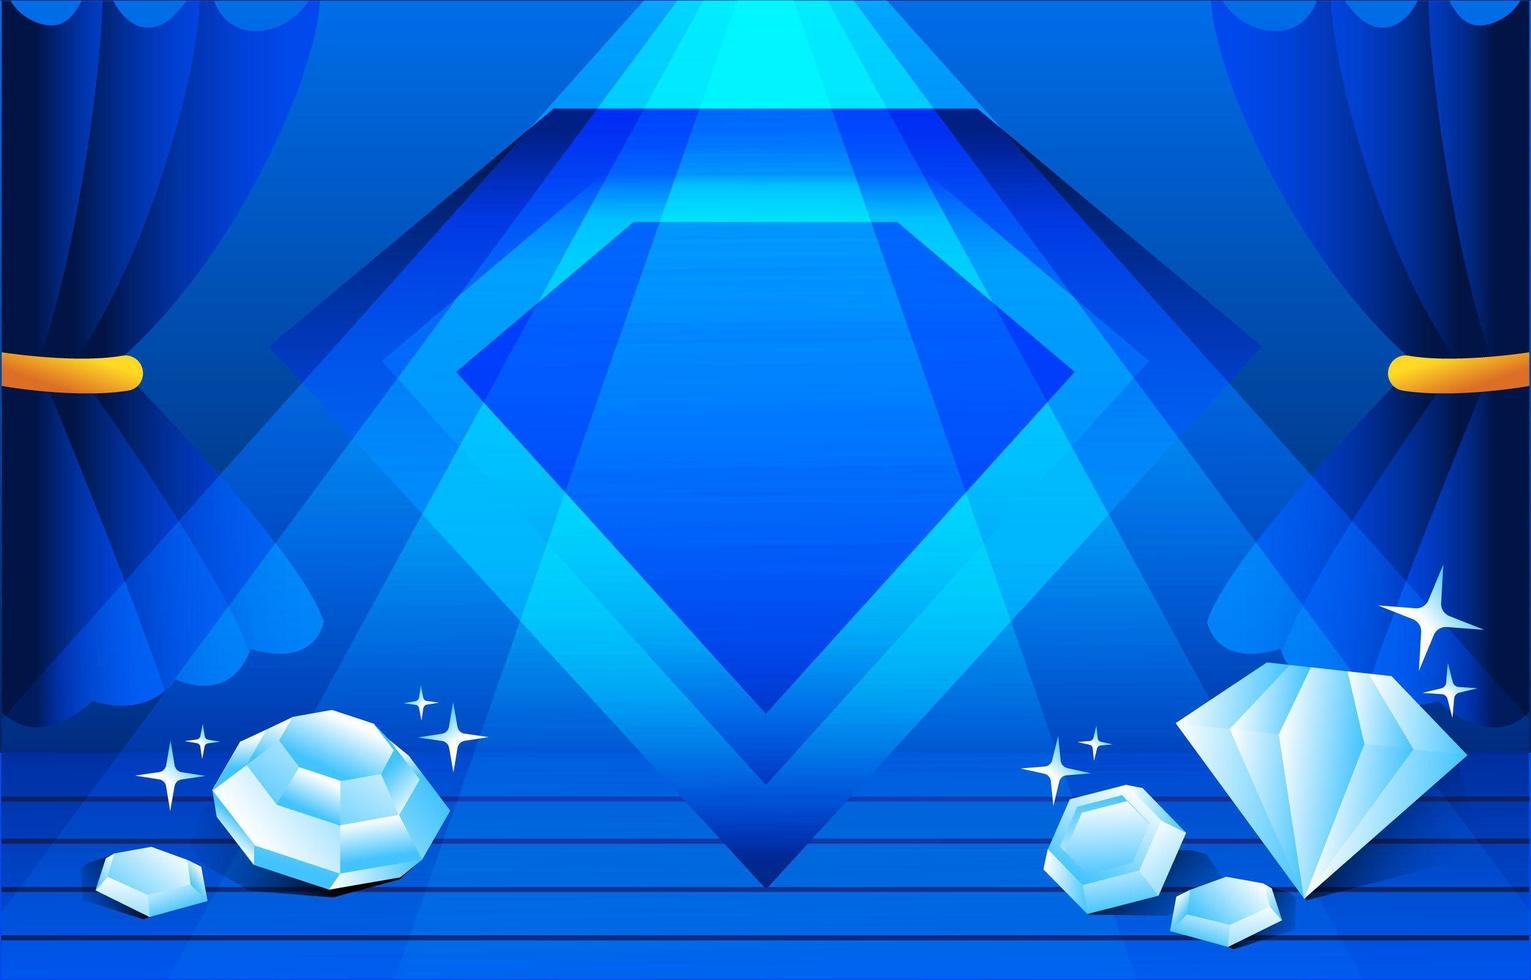 kristal blauwe sieraden achtergrond vector